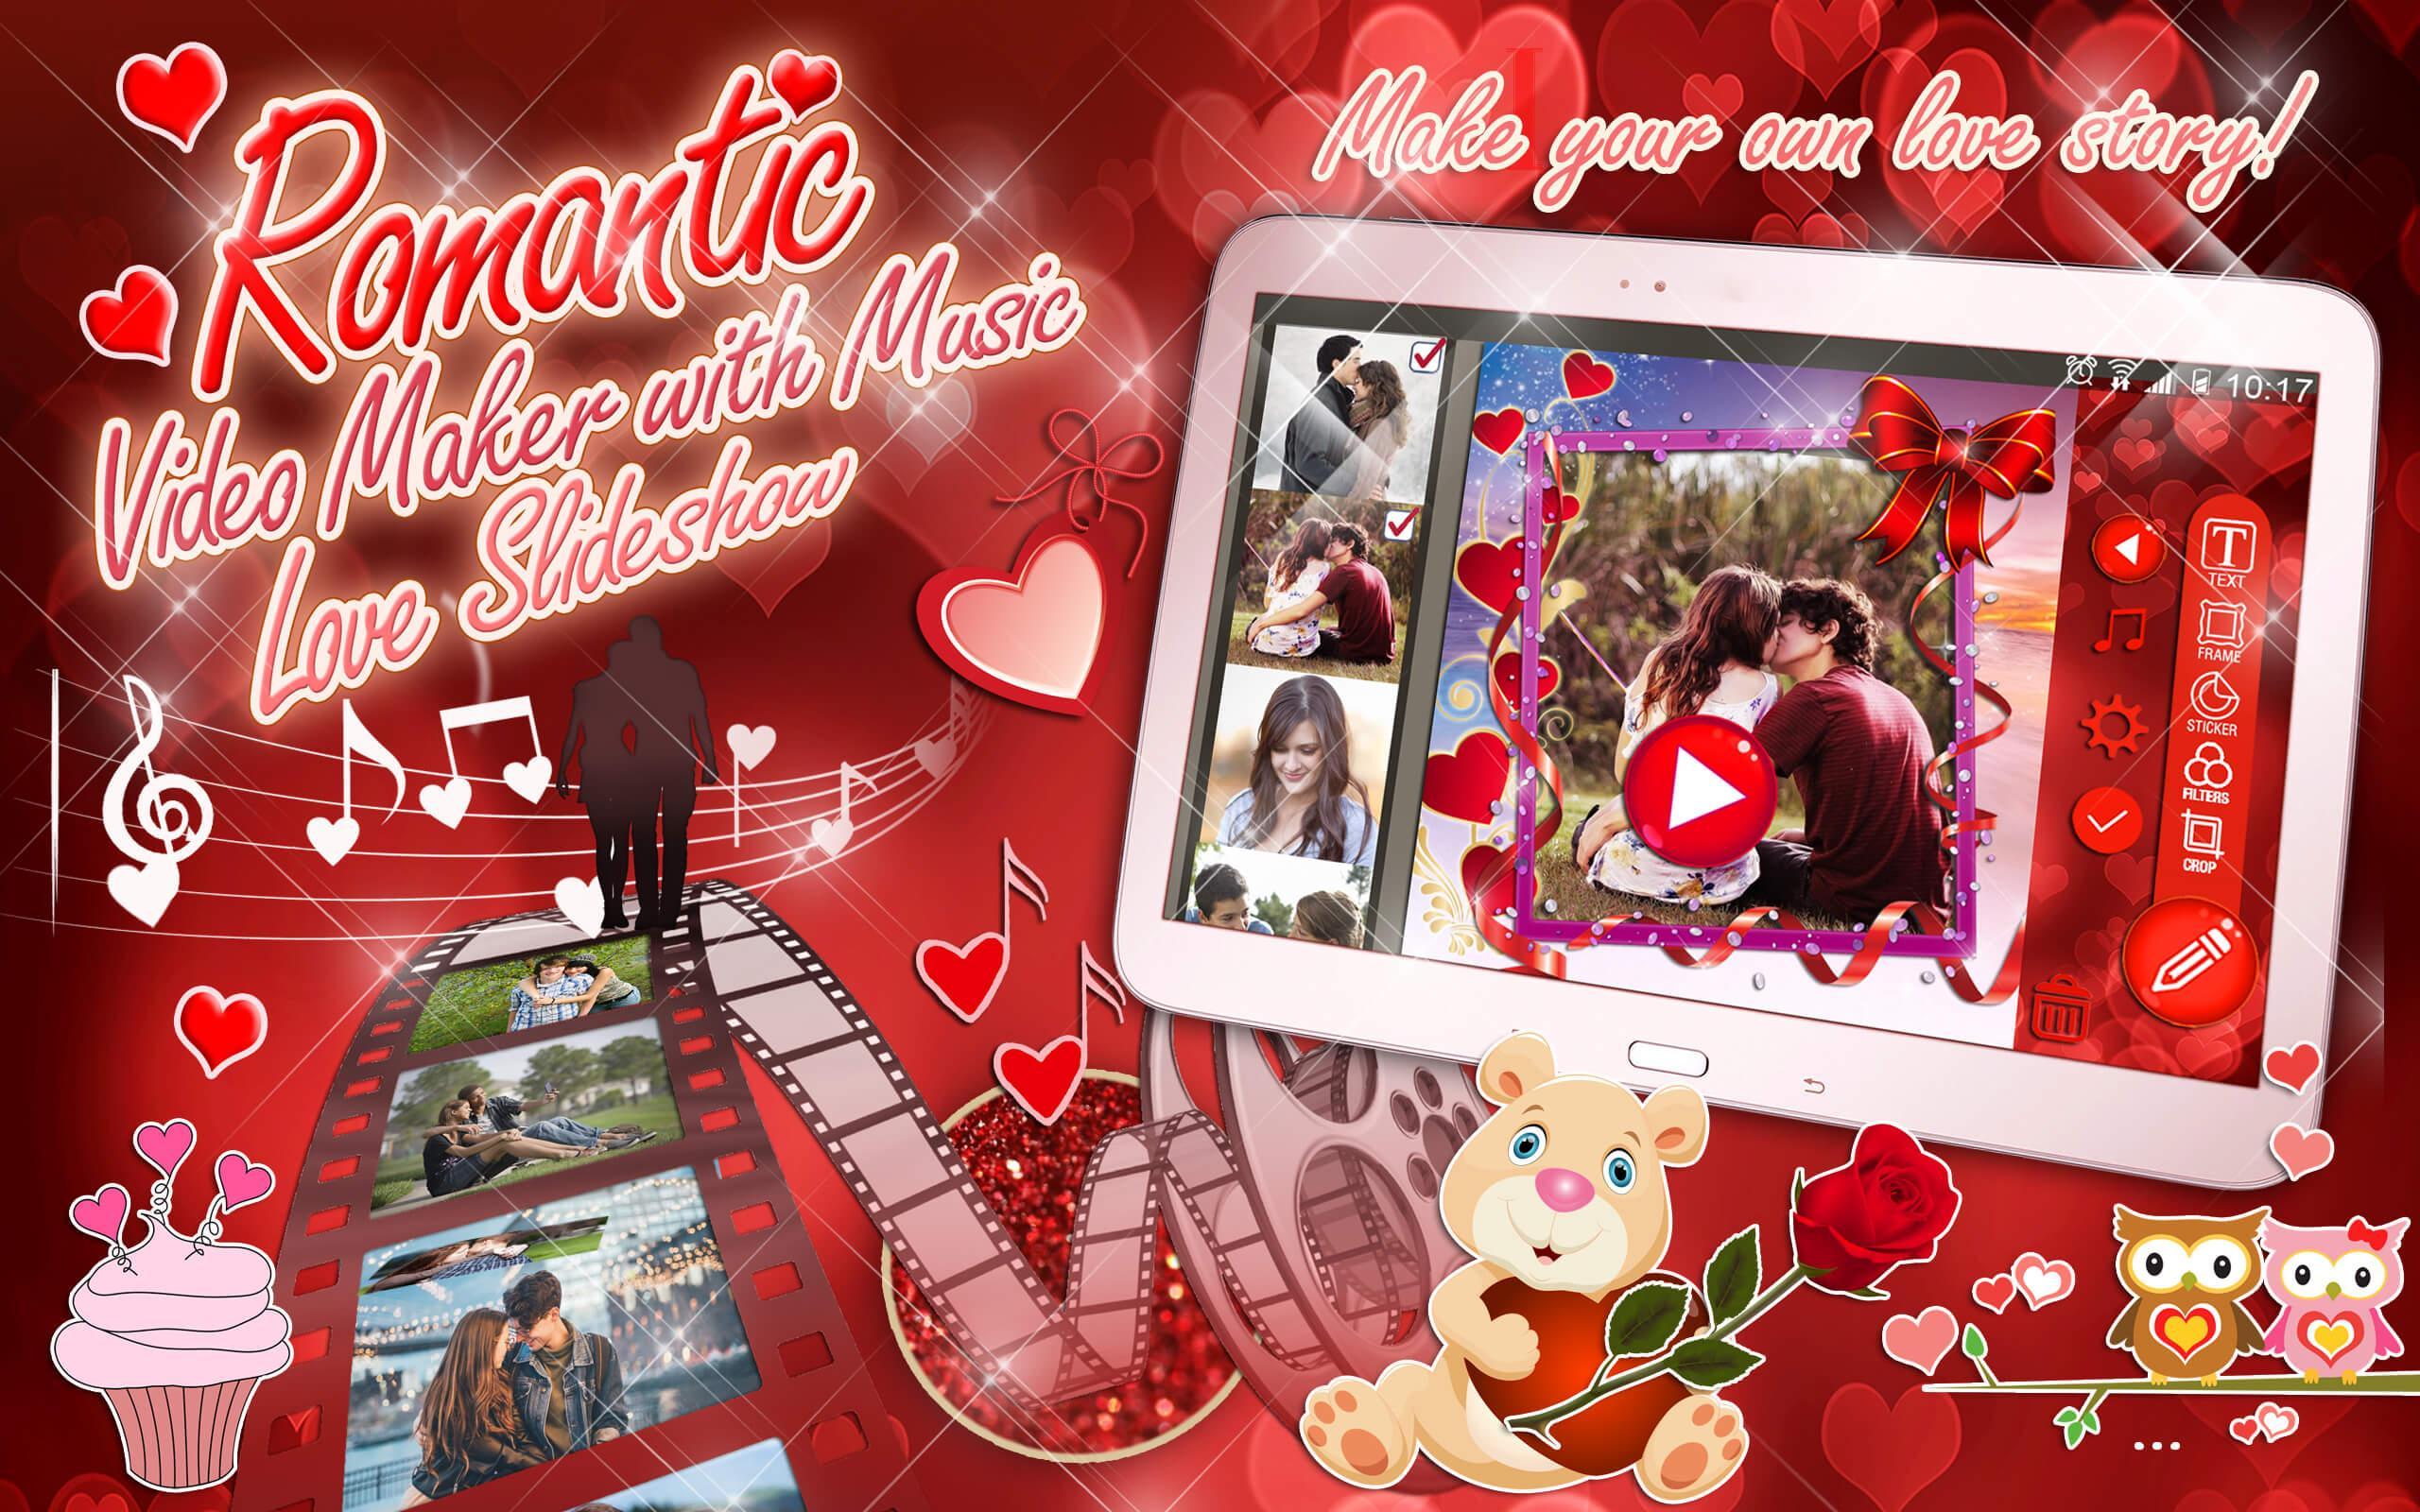 Wonderbaarlijk Liefde 💘 Video Maken met Fotos en Muziek for Android - APK Download TK-03